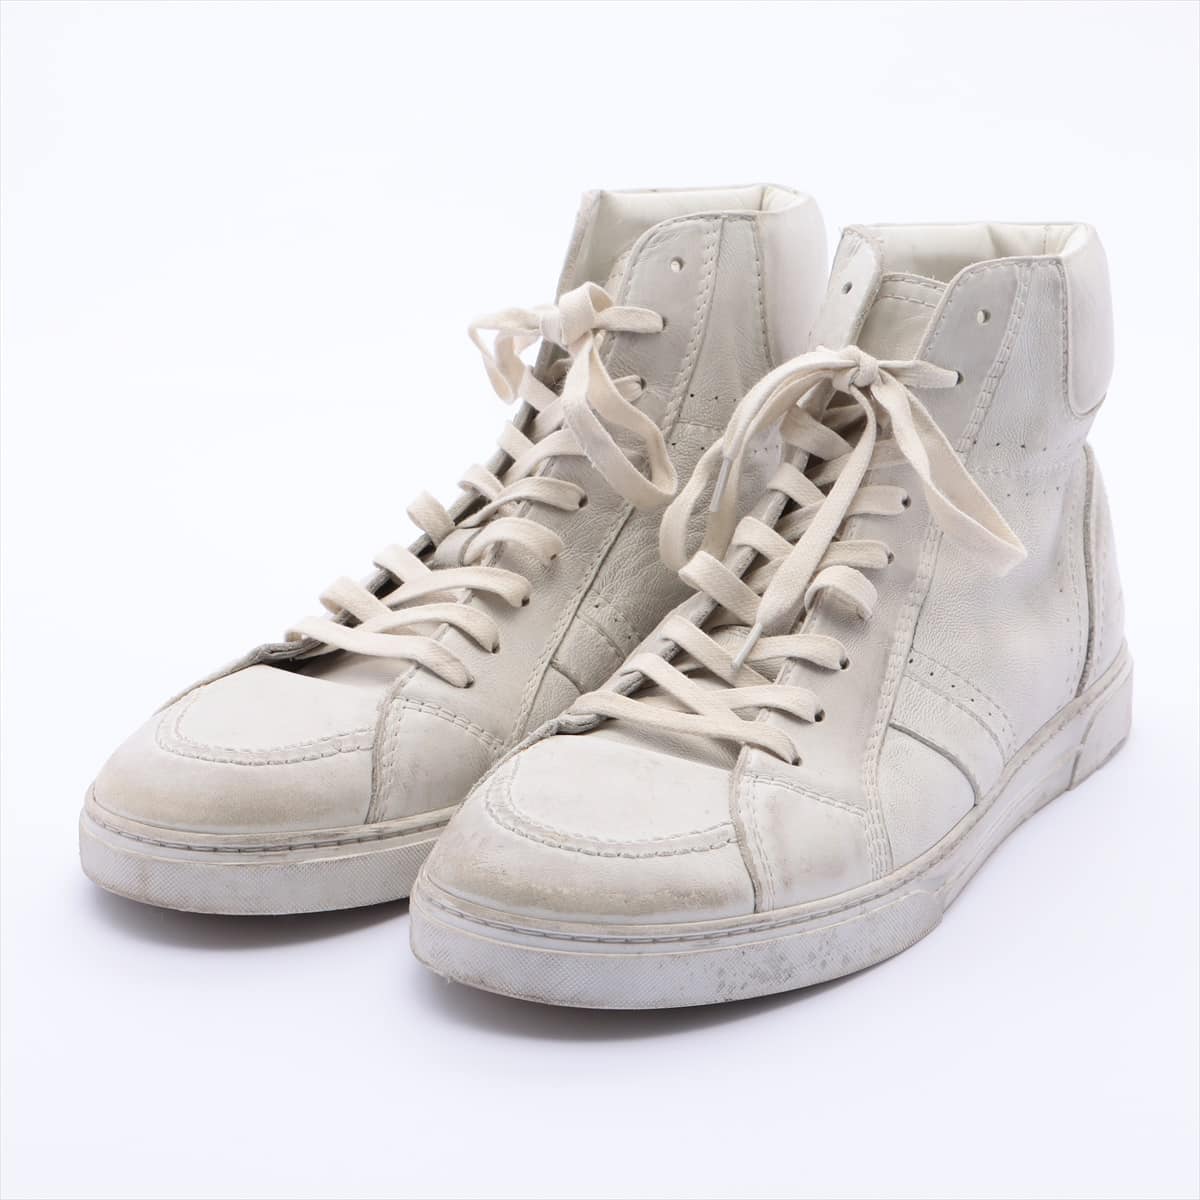 Saint Laurent Paris Leather High-top Sneakers 42 Men's White 532874 Vintage processing